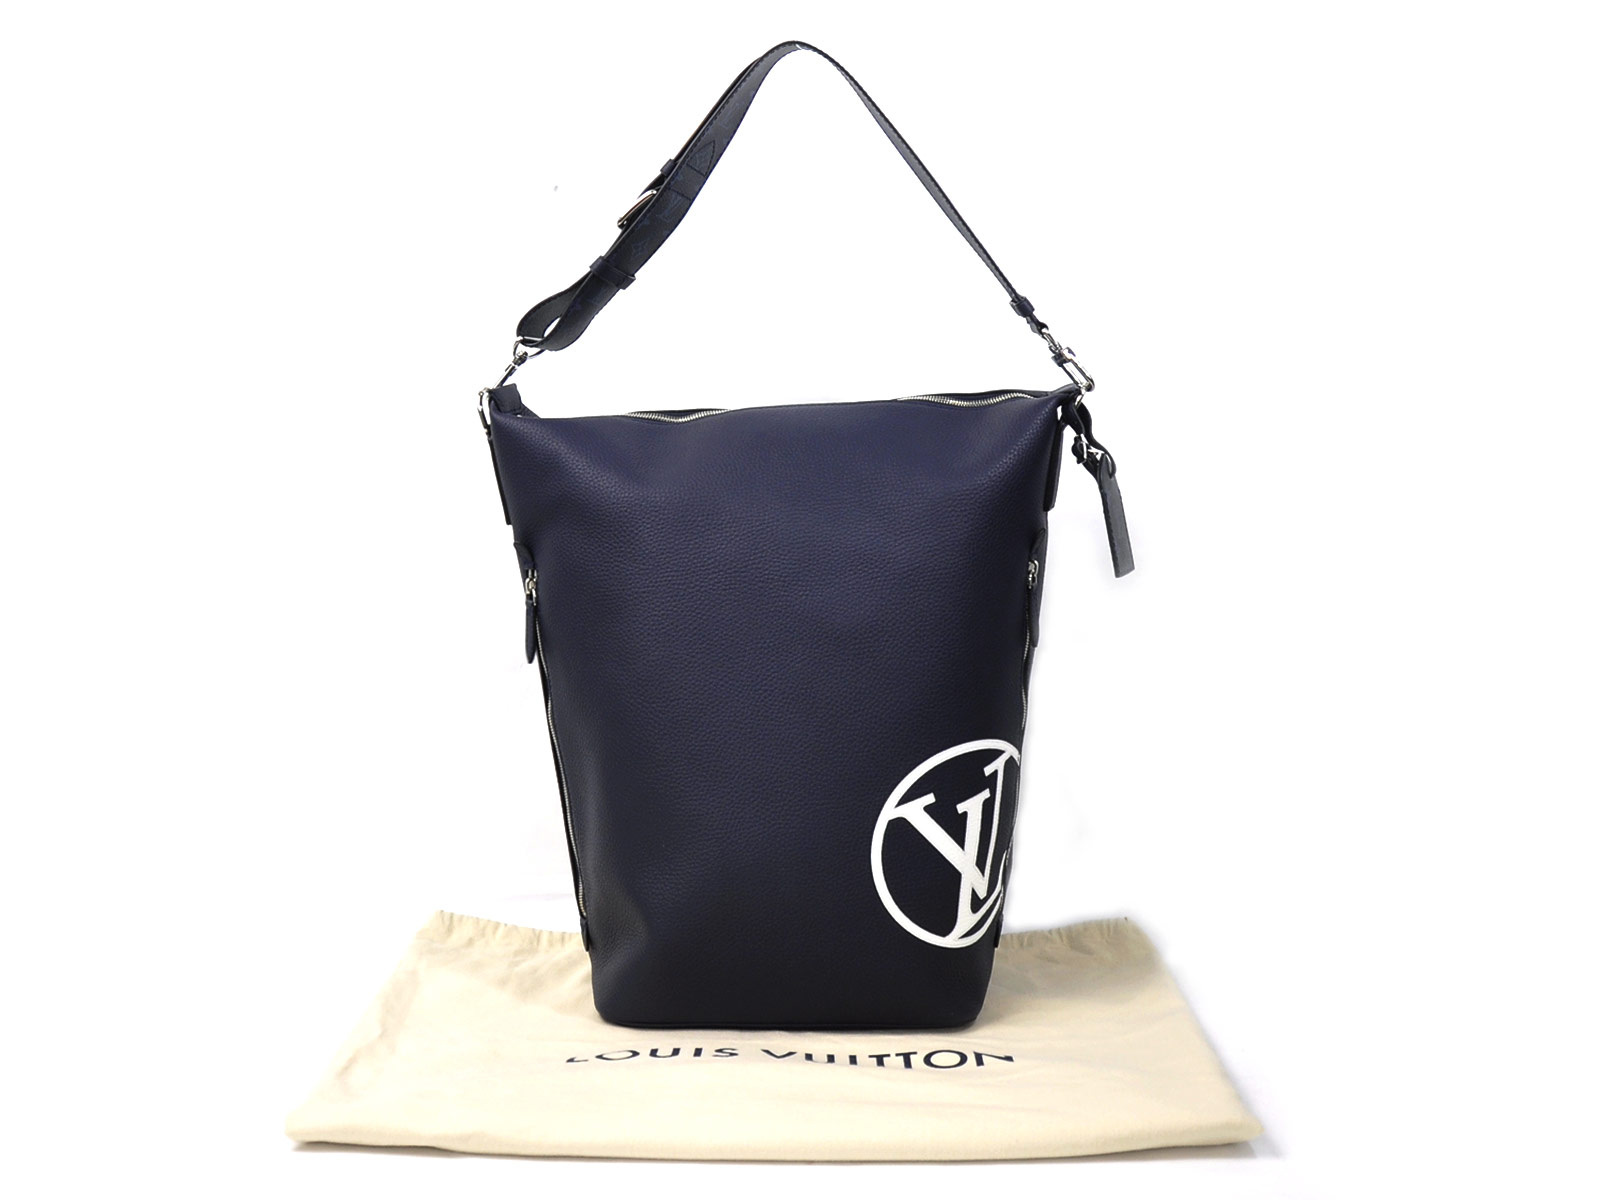 Auth Louis Vuitton East side duffel Shoulder Bag Navy Leather M53438 - 97871c | eBay